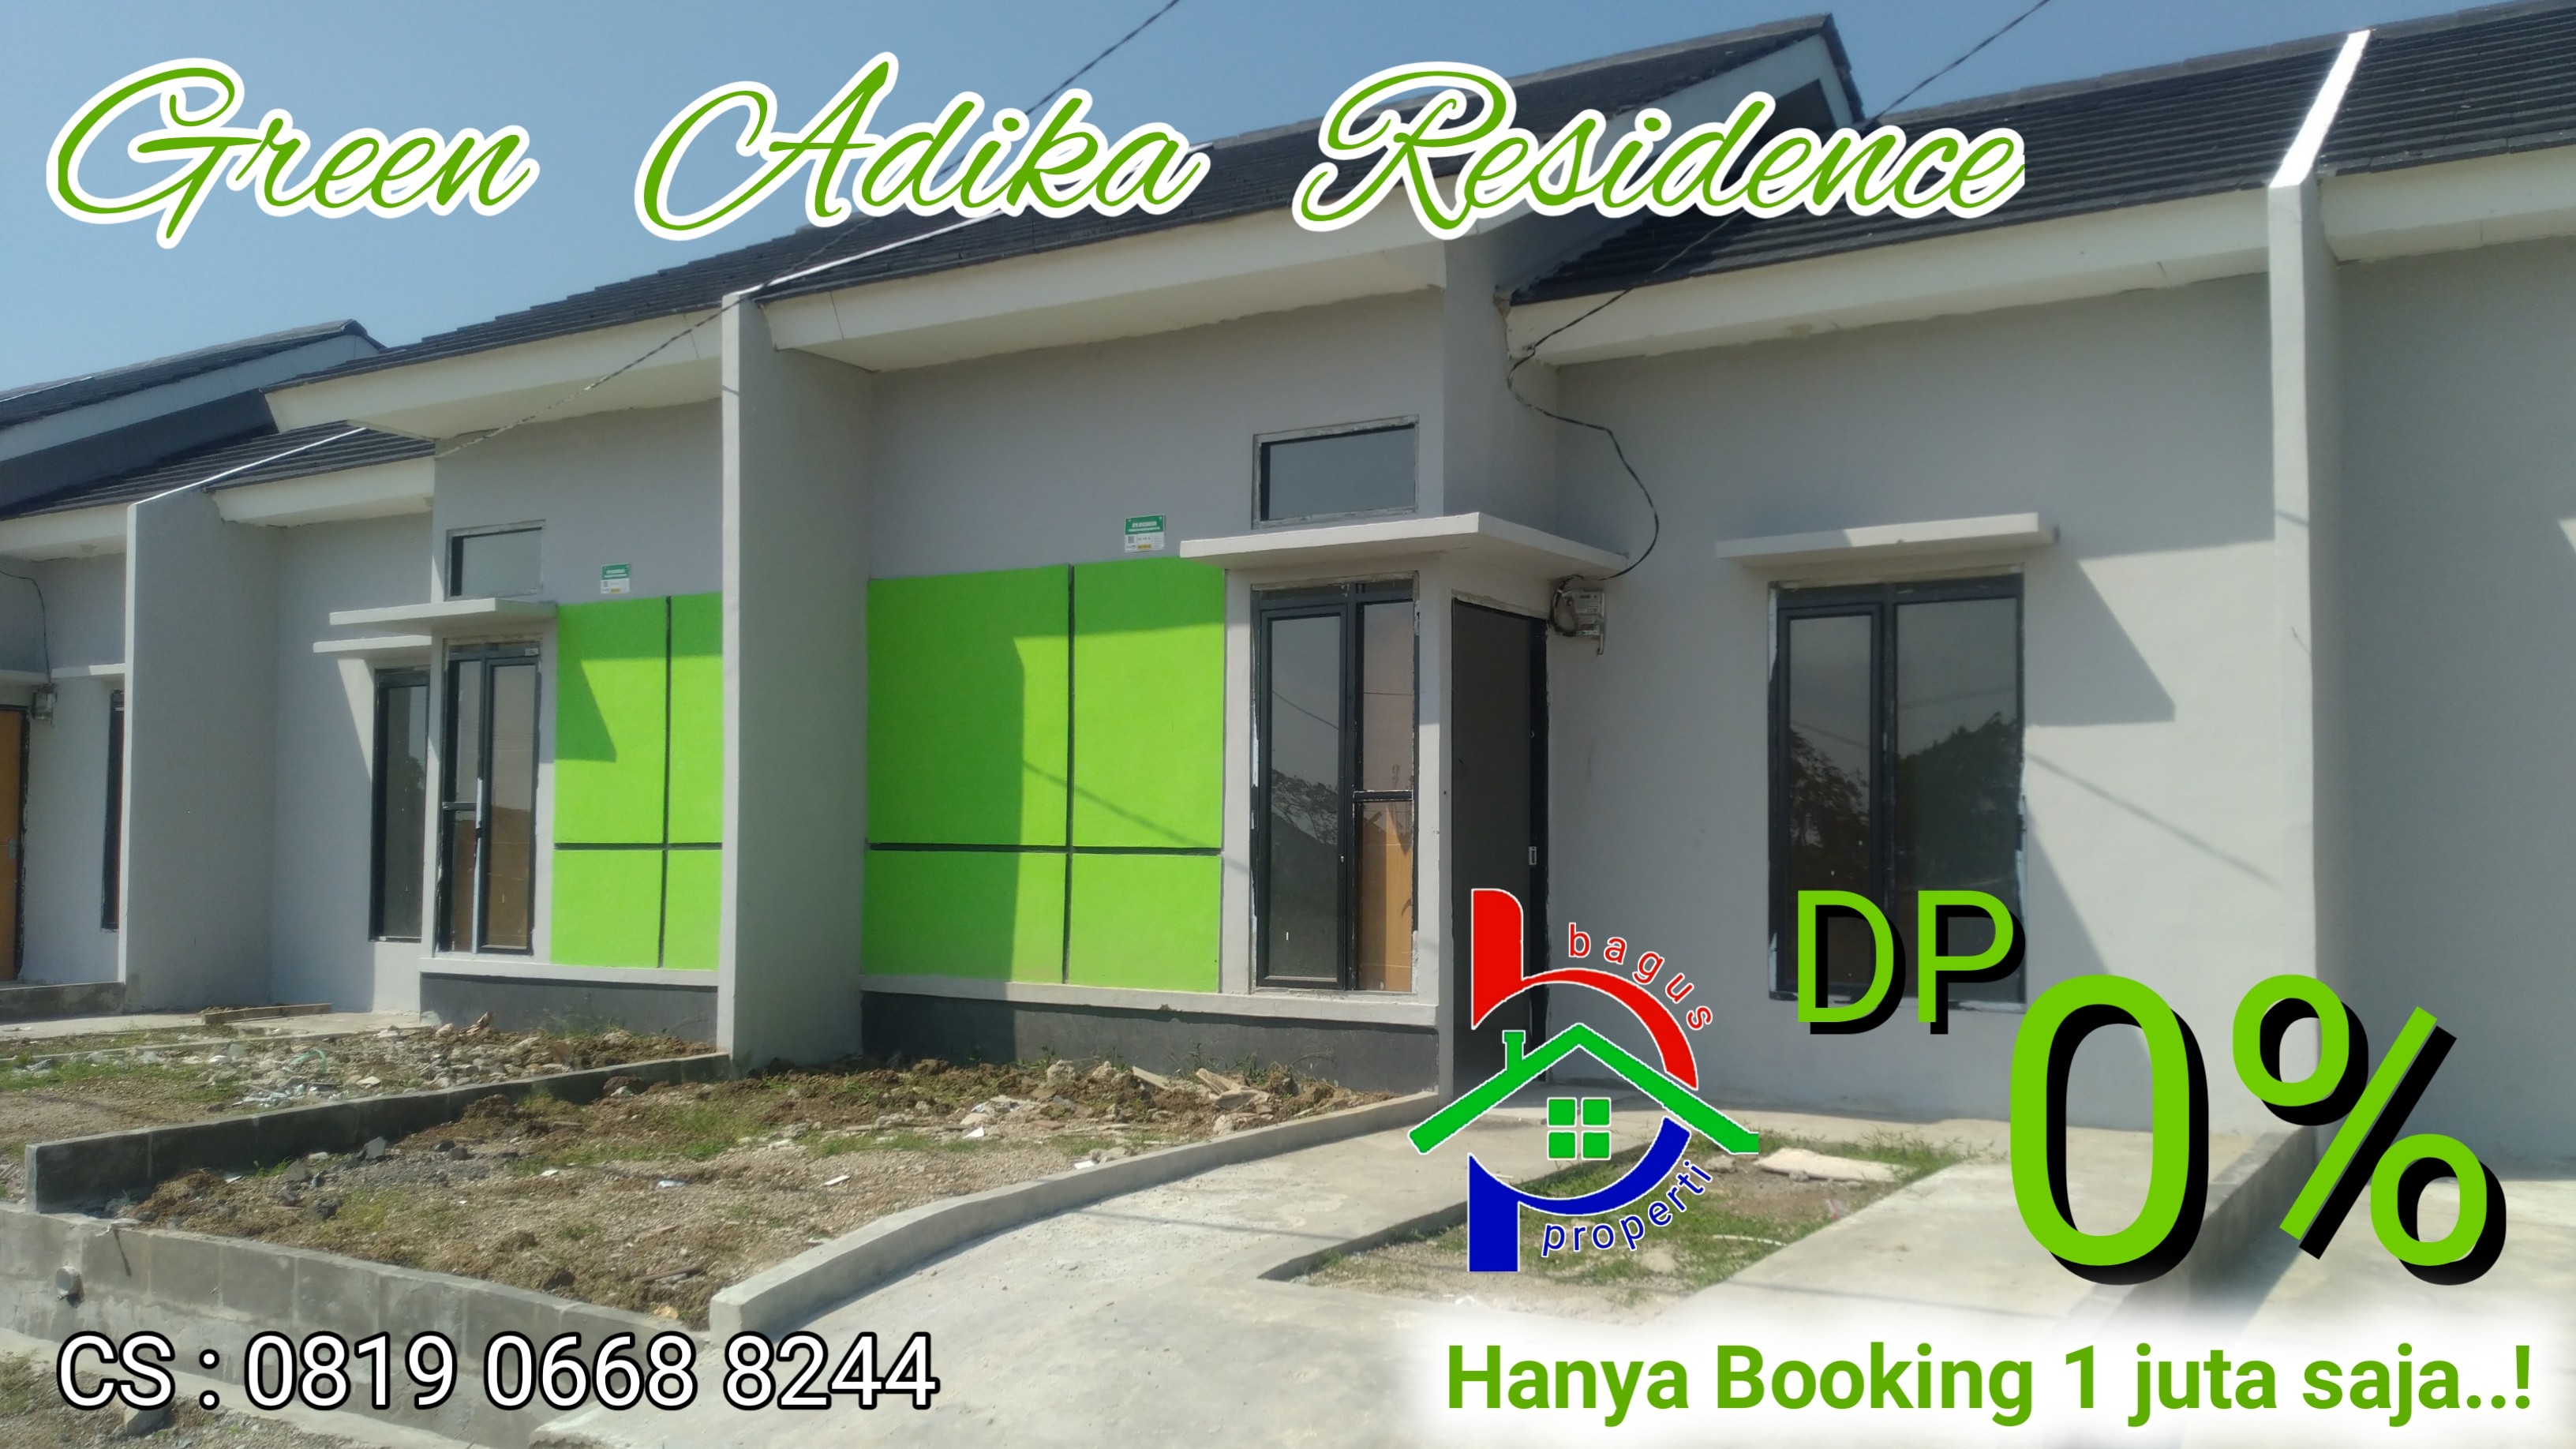 green-adika-residence-tanpa-dp